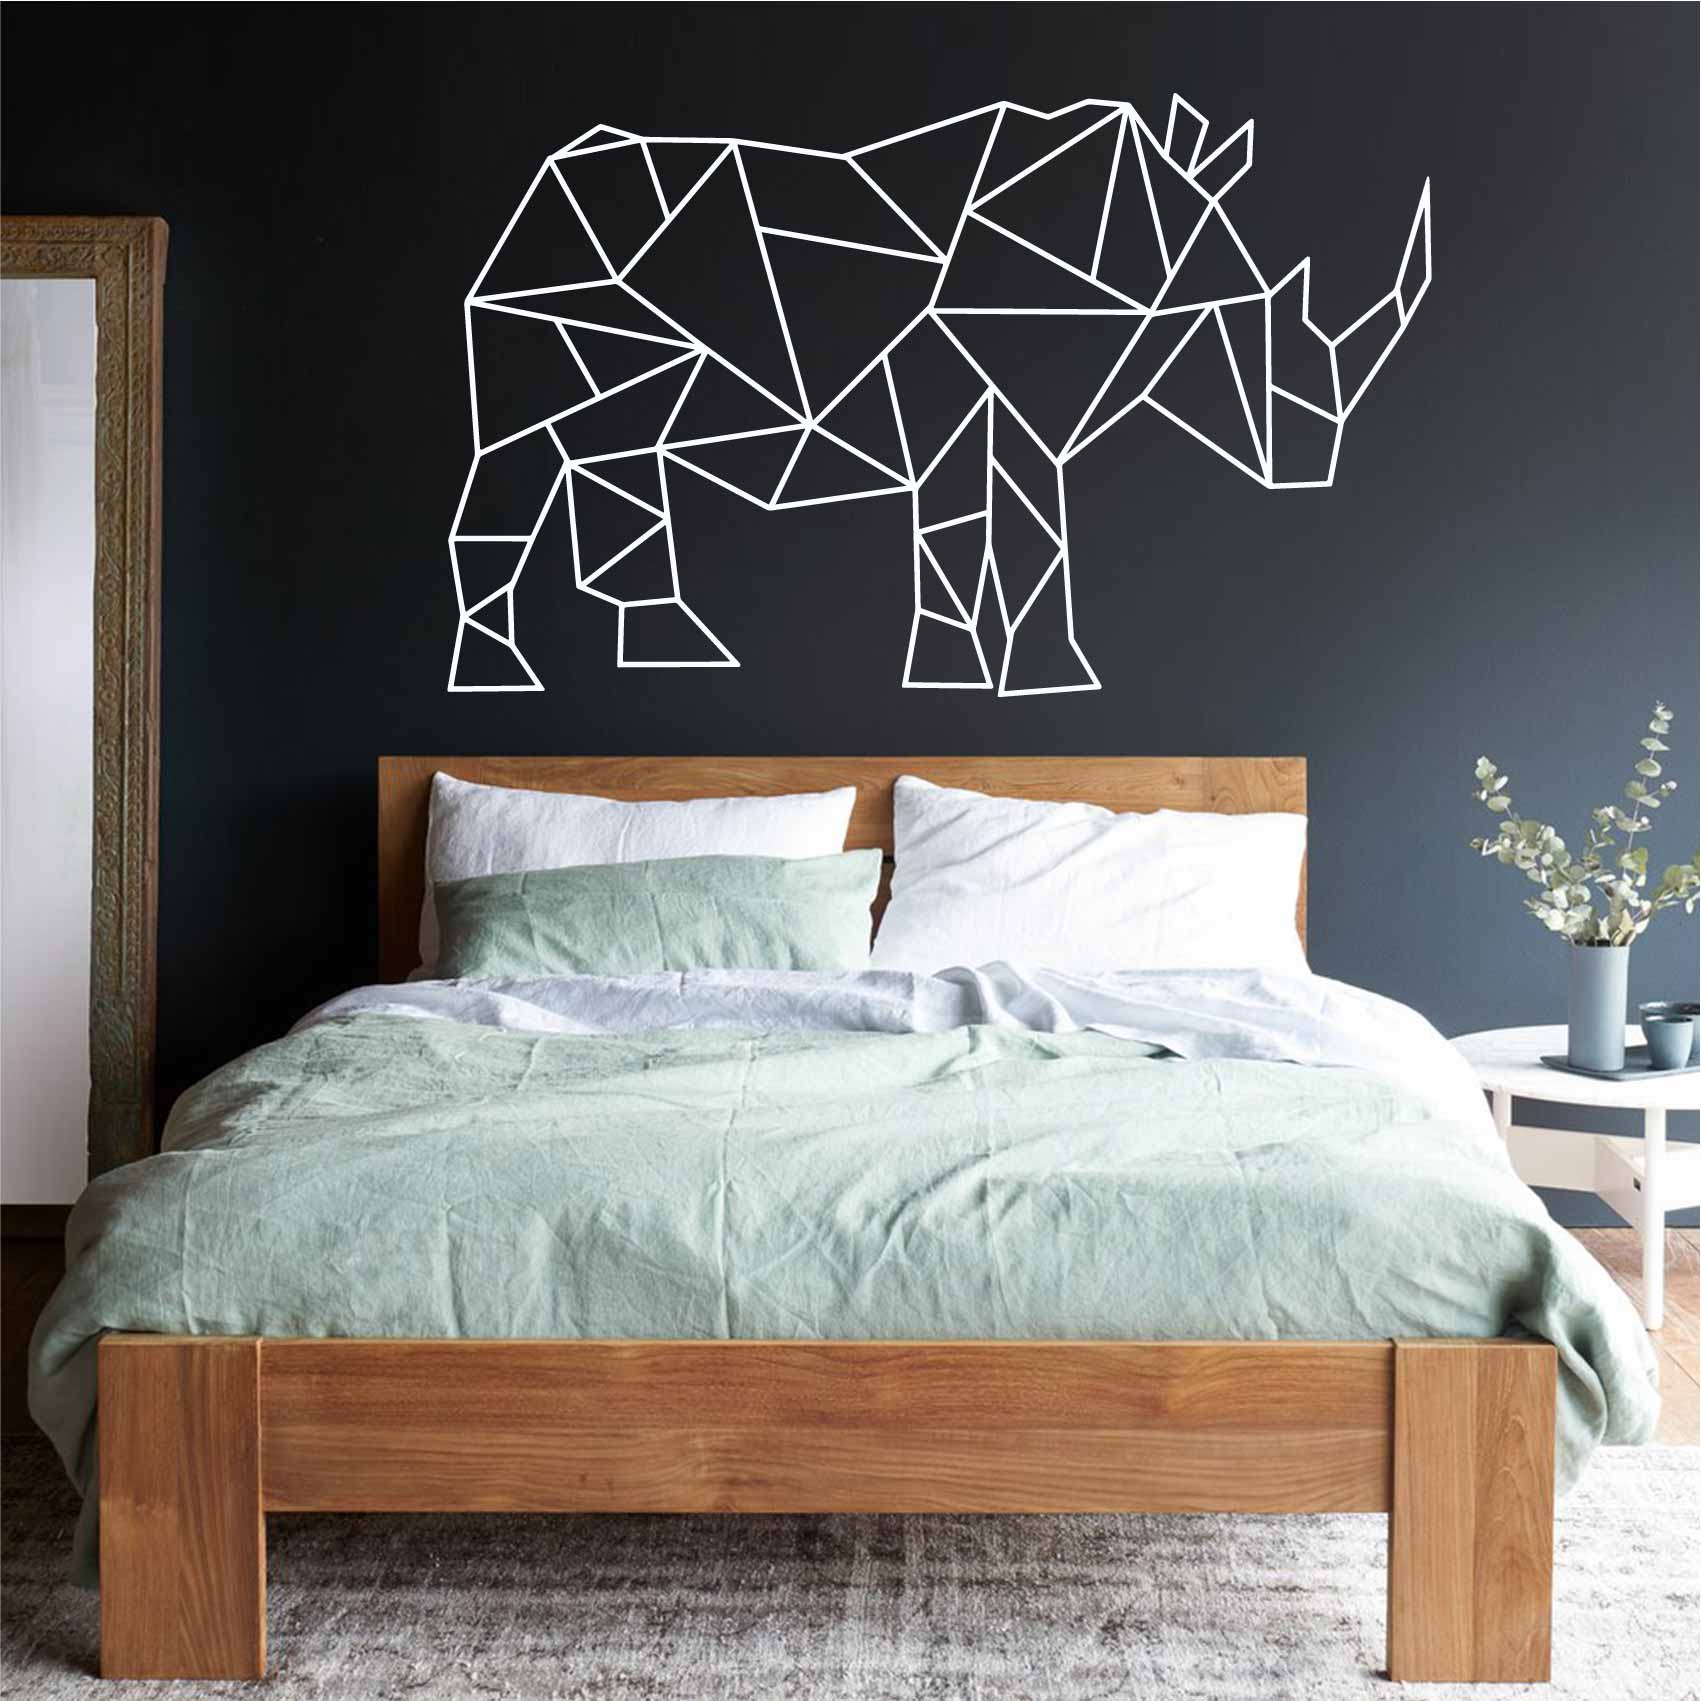 stickers-rhinoceros-origami-ref1rhinoceros-stickers-muraux-origami-autocollant-deco-salon-chambre-sticker-mural-origami-decoration